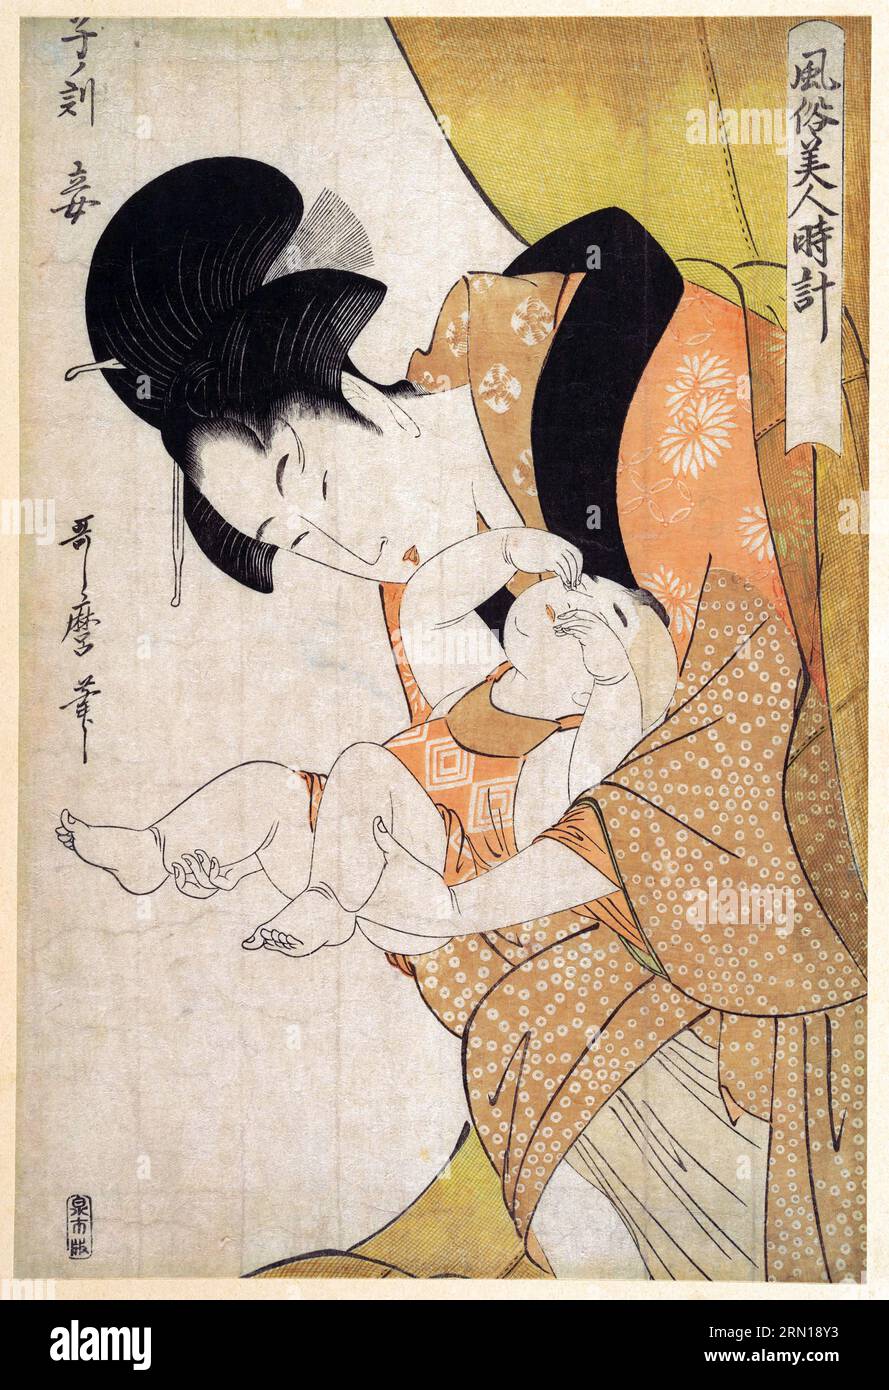 Japon : minuit - mère et enfant endormi. Estampe sur bois Ukiyo-e de Kitagawa Utamaro (c. 1753 - 31 octobre 1806), 1790. Kitagawa Utamaro était un graveur et peintre japonais, considéré comme l'un des plus grands artistes de gravures sur bois (ukiyo-e). Il est surtout connu pour ses études magistralement composées de femmes, connues sous le nom de bijinga. Il a également produit des études sur la nature, en particulier des livres illustrés d'insectes. Banque D'Images